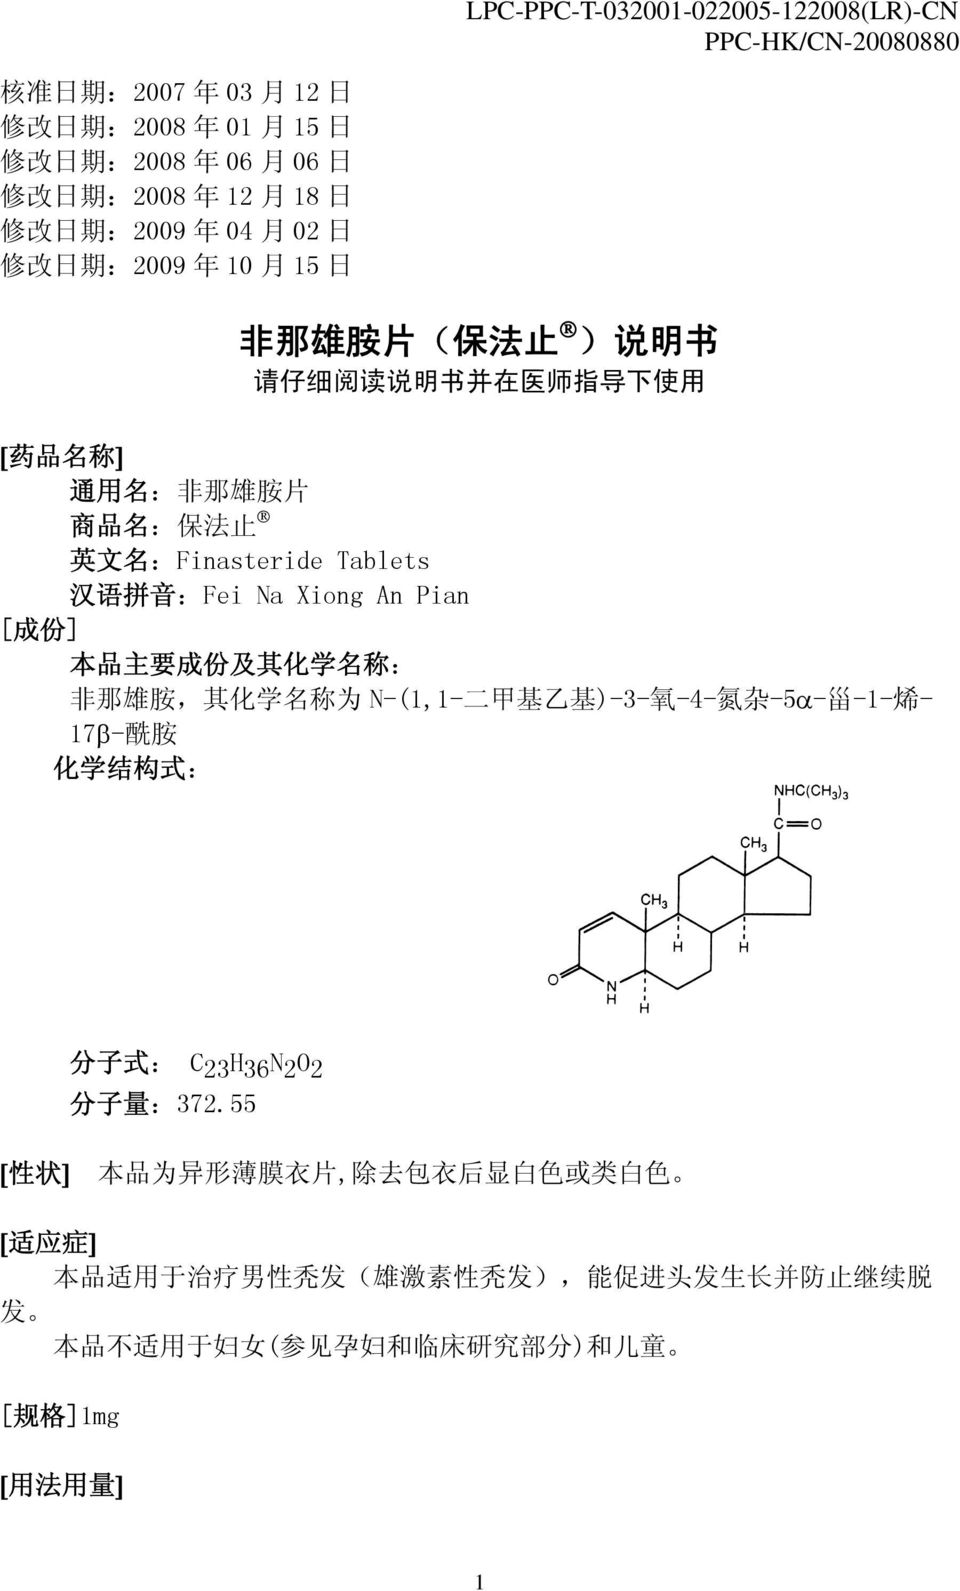 化 学 名 称 : 非 那 雄 胺, 其 化 学 名 称 为 N-(1,1- 二 甲 基 乙 基 )-3- 氧 -4- 氮 杂 -5α- 甾 -1- 烯 - 17β- 酰 胺 化 学 结 构 式 : 分 子 式 : C 23 H 36 N 2 O 2 分 子 量 :372.